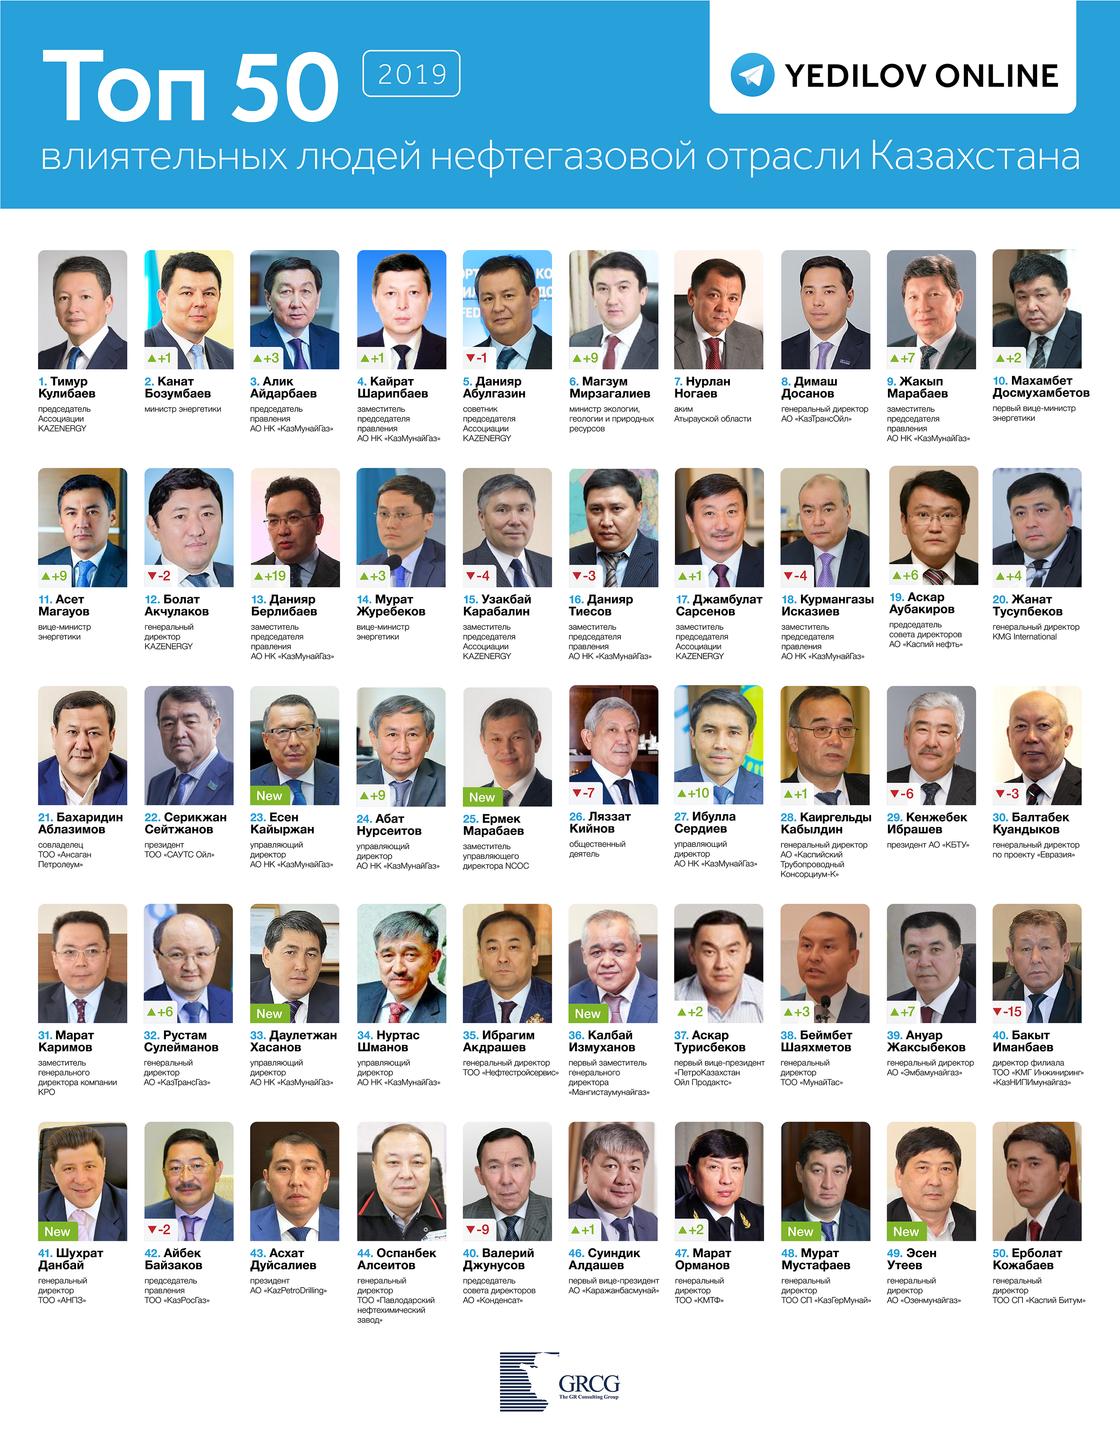 Зять Назарбаева признан самым влиятельным человеком в нефтяной отрасли Казахстана